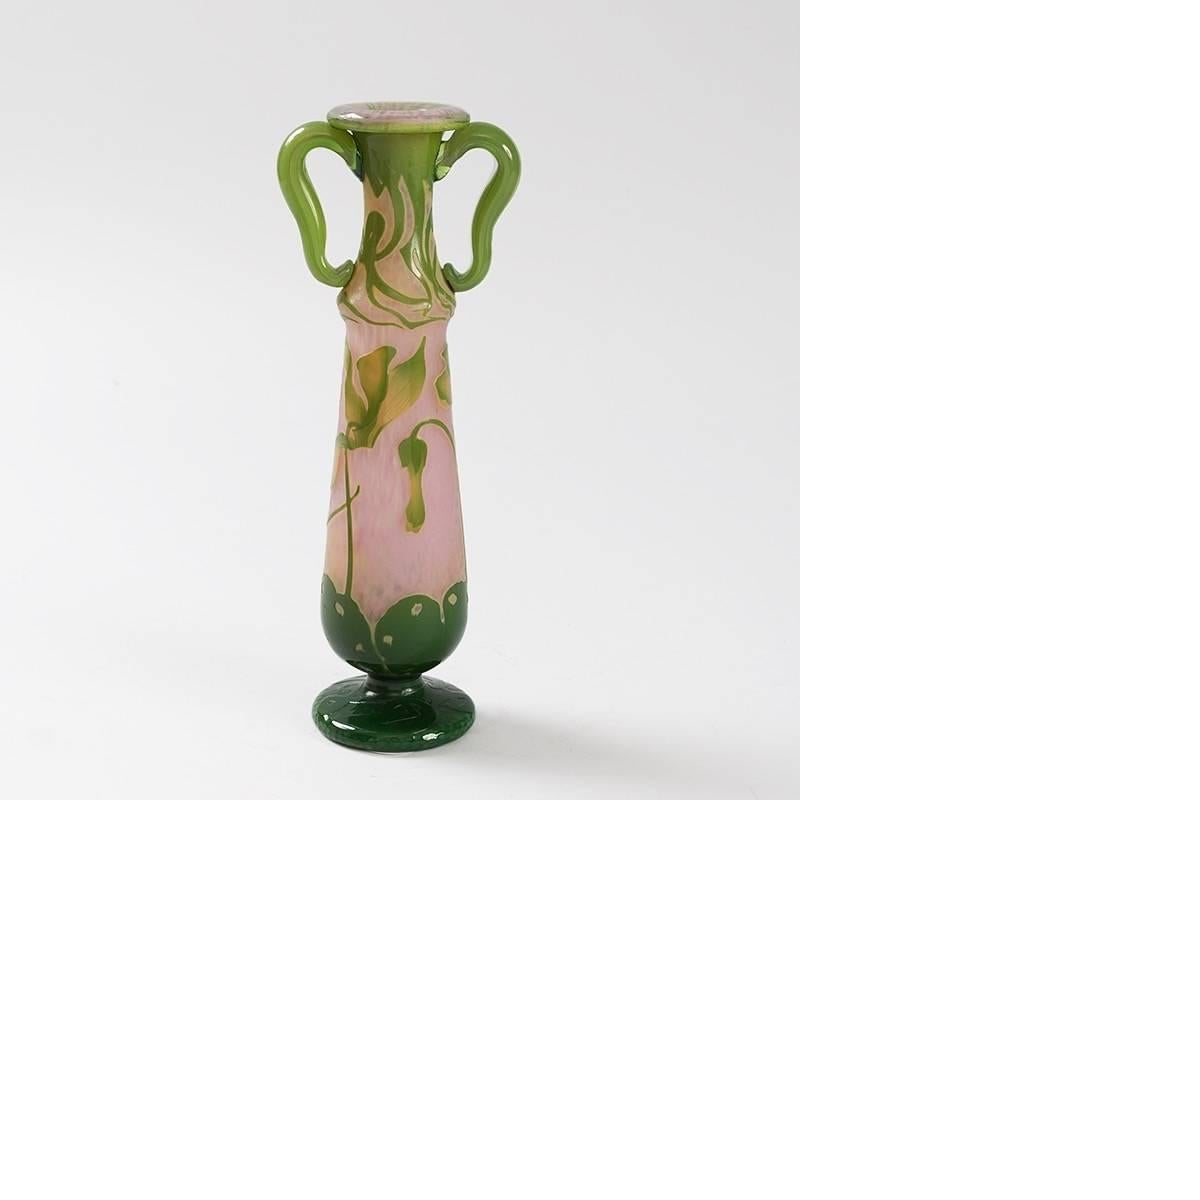 Französische emaillierte und geätzte Glasvase mit aufgesetzten Henkeln von Daum. Die Vase hat einen rosa Martelé-Hintergrund. Der dunkelgrüne Sockel ist mit Schnitzereien versehen. Er ist mit hellgrünen, radgeschnitzten Blumen und Ranken verziert.